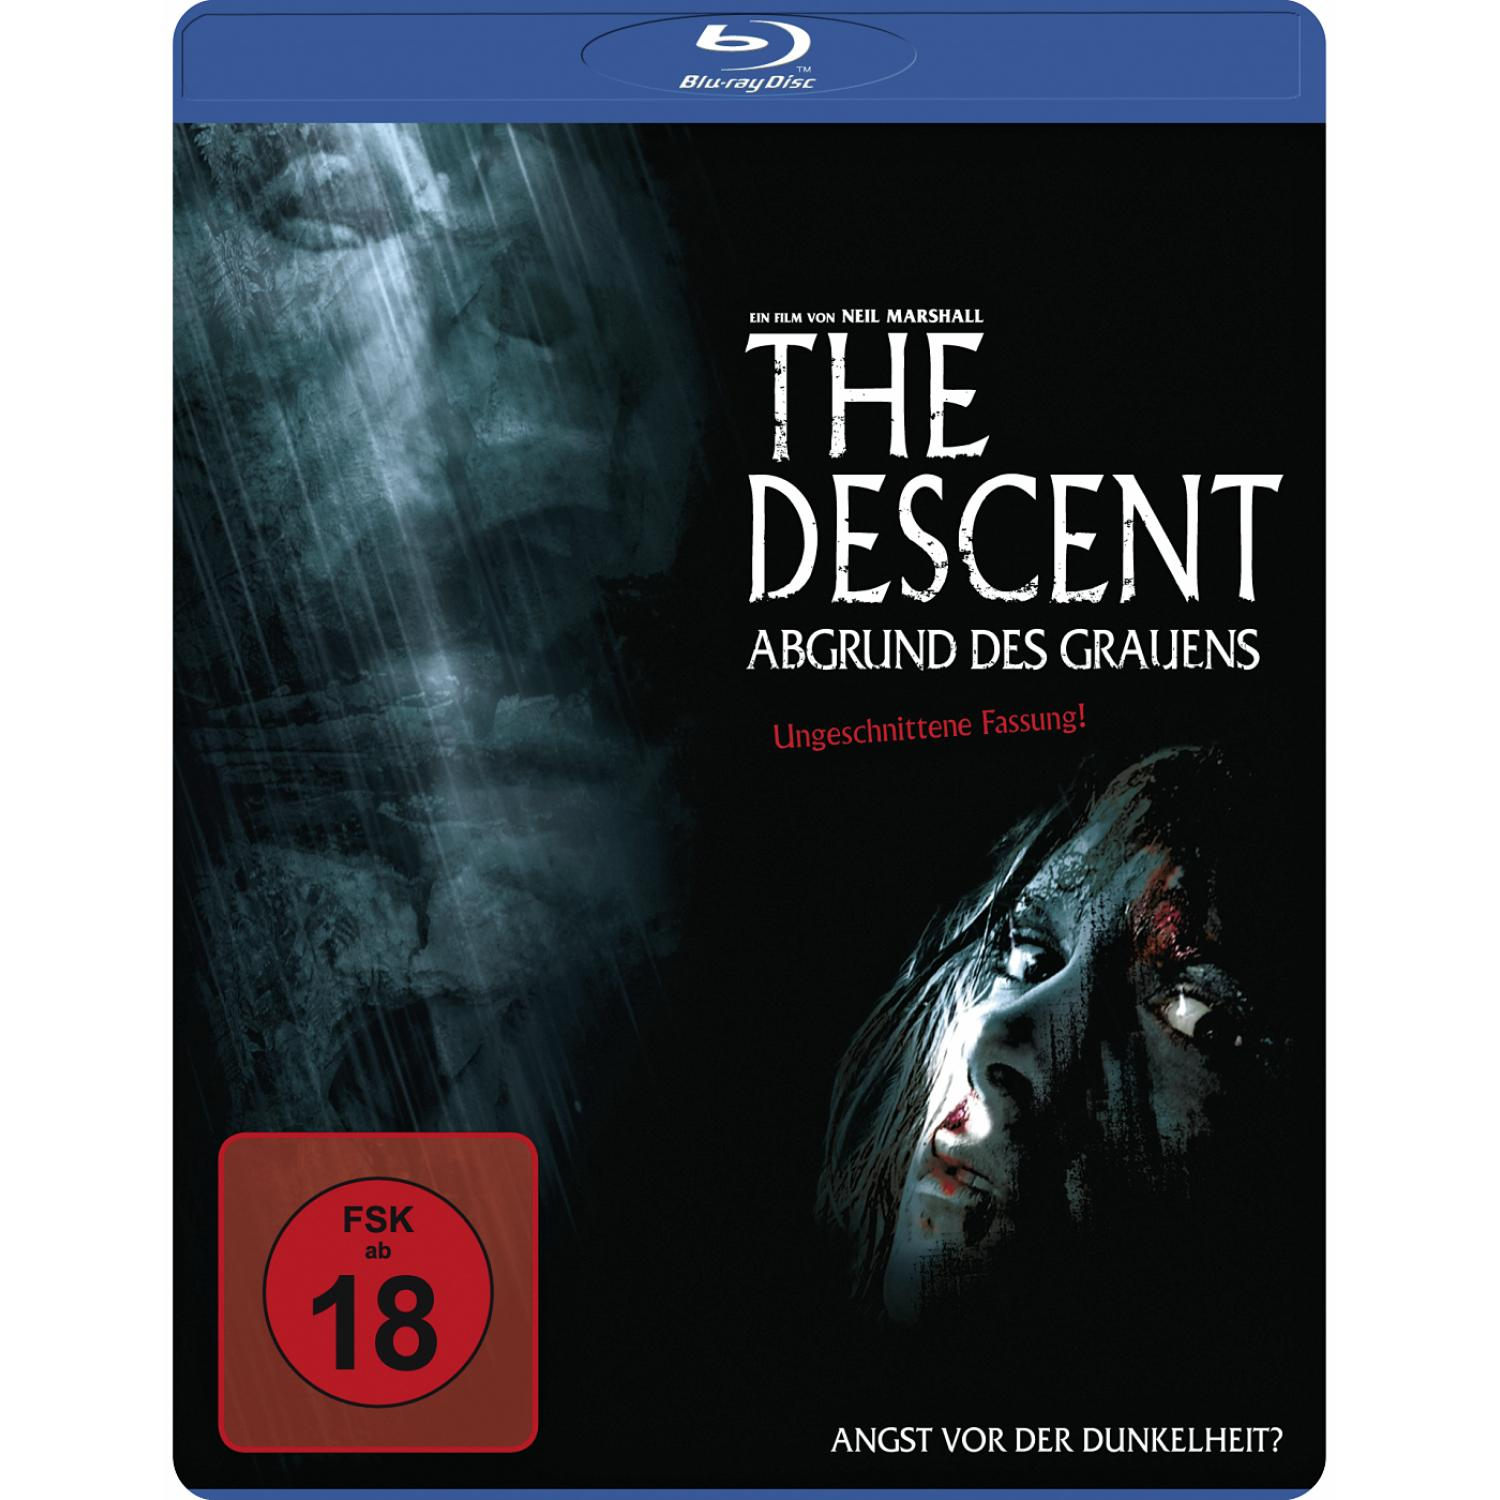 Grauens Blu-ray Descent The - des Abgrund